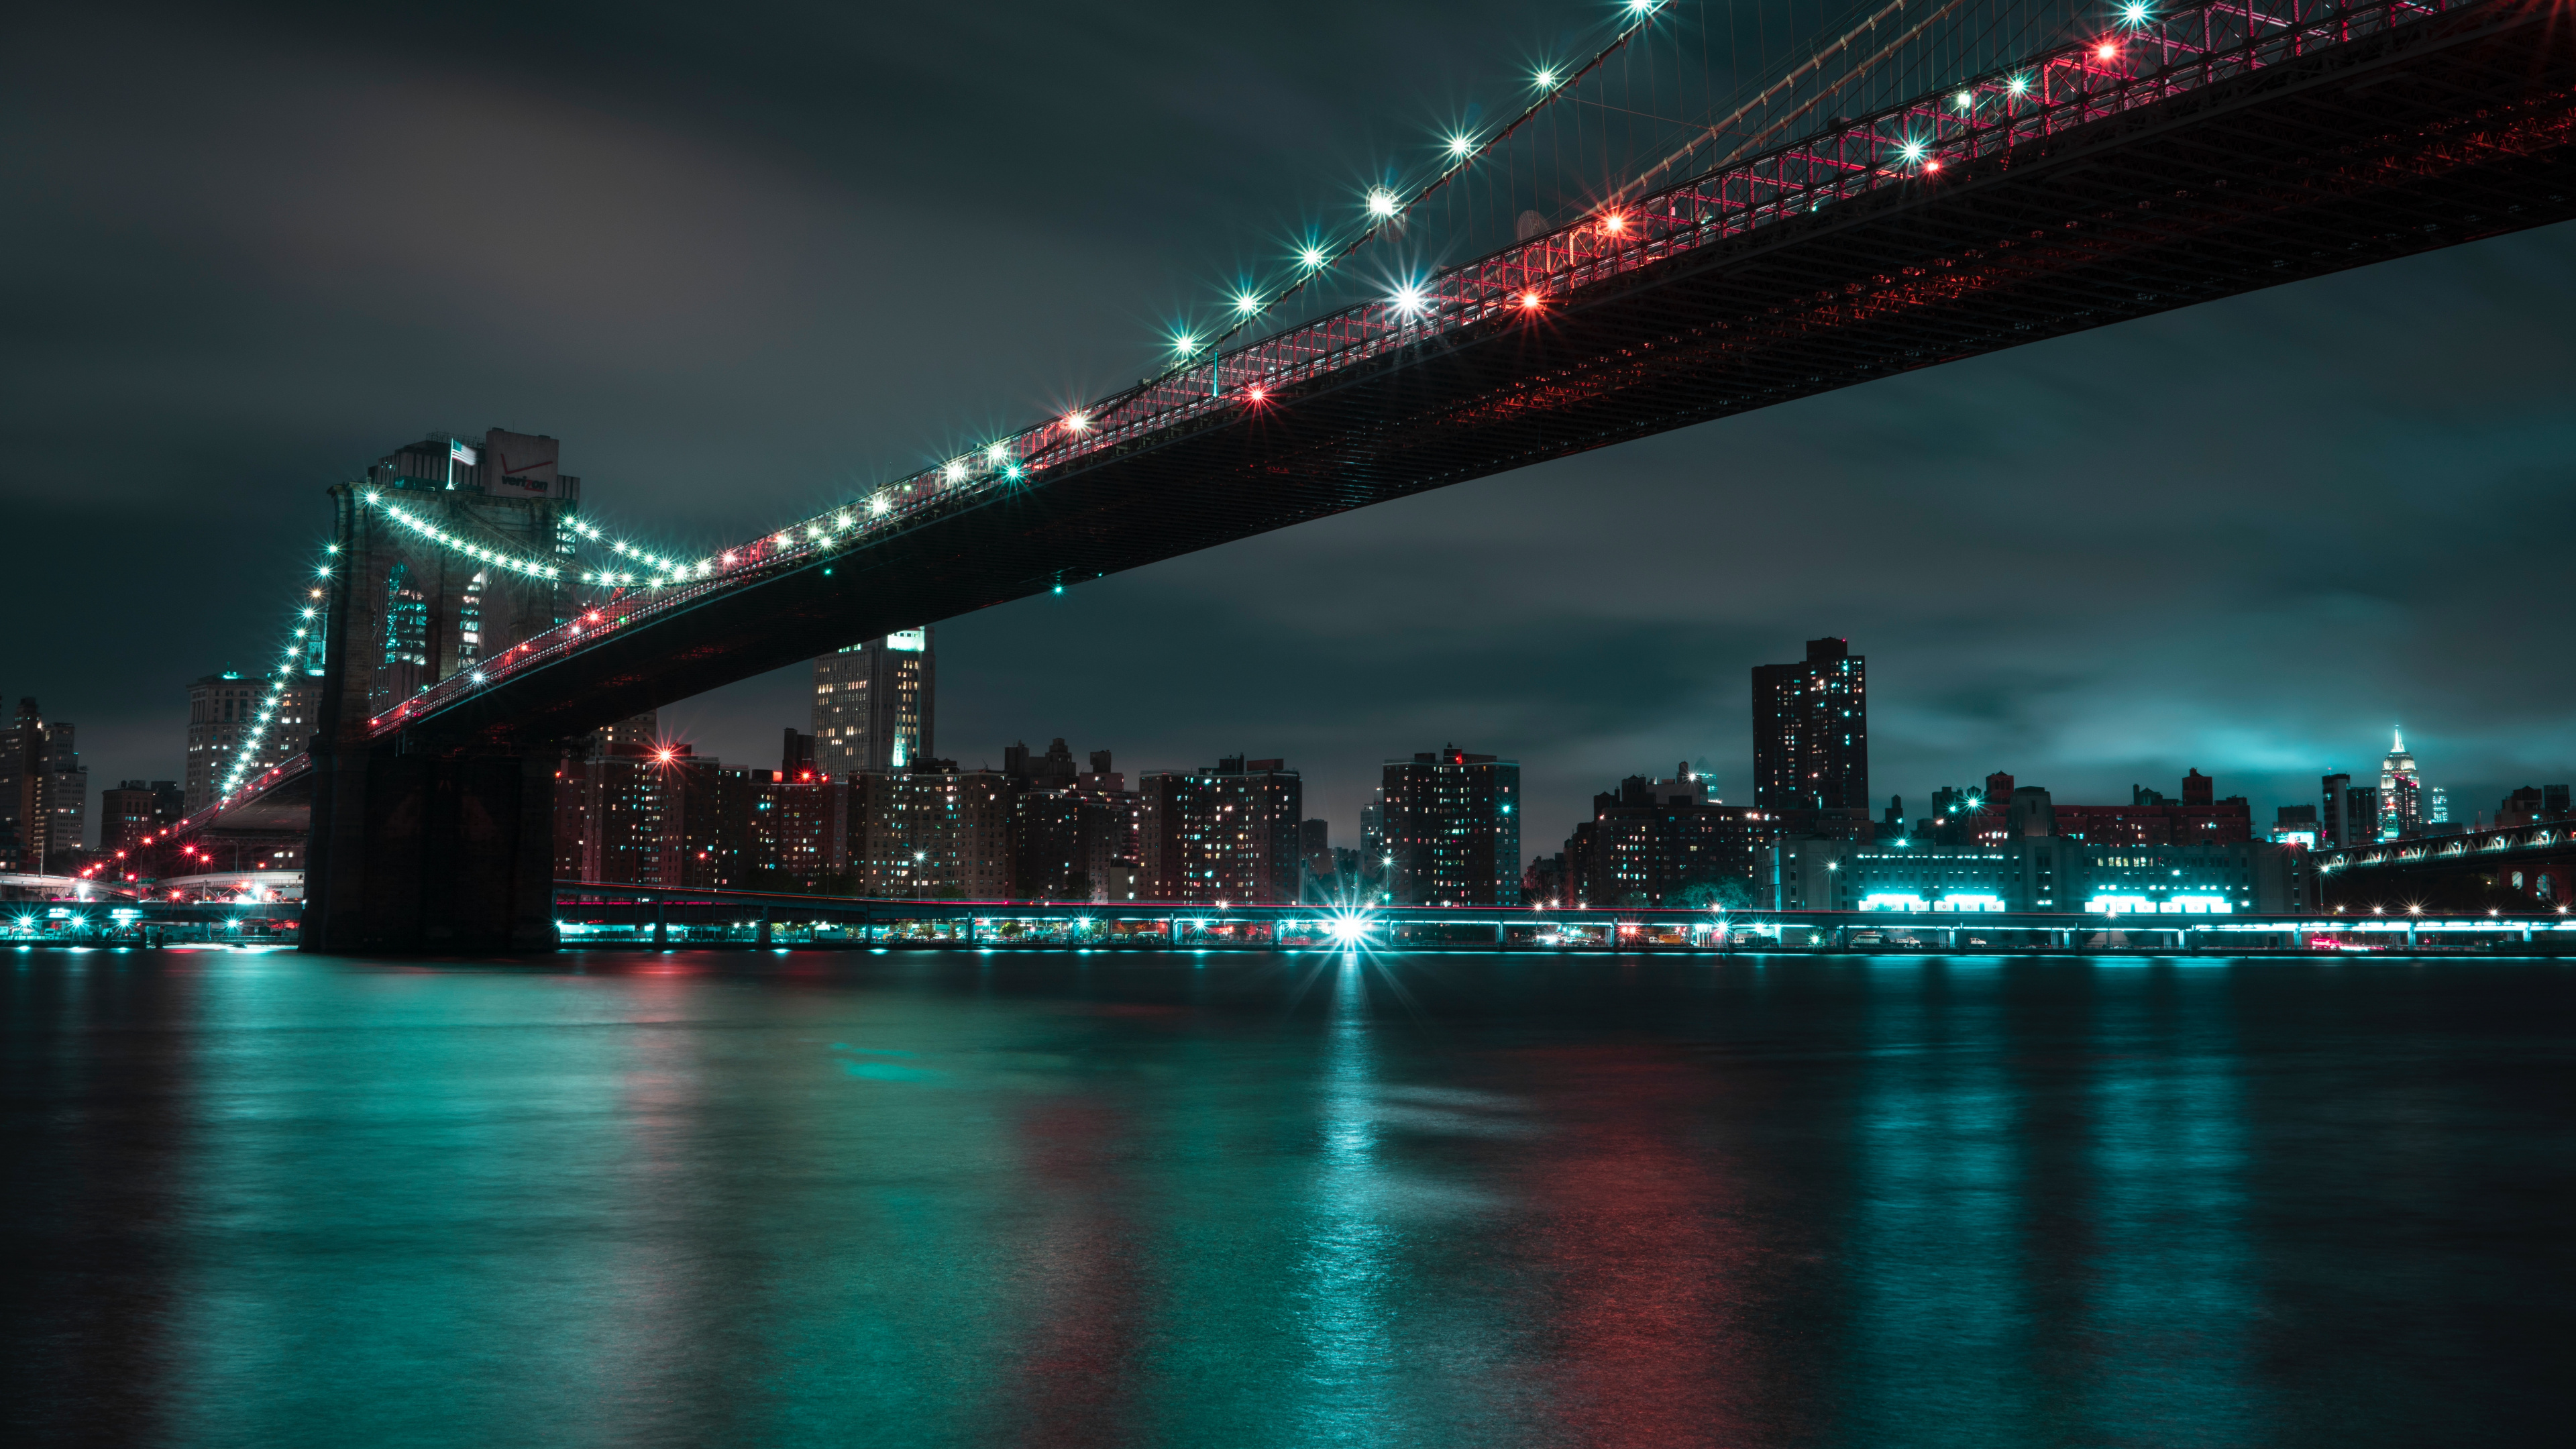 布鲁克林大桥, 城市景观, 城市, 红色的, 里程碑 壁纸 3840x2160 允许